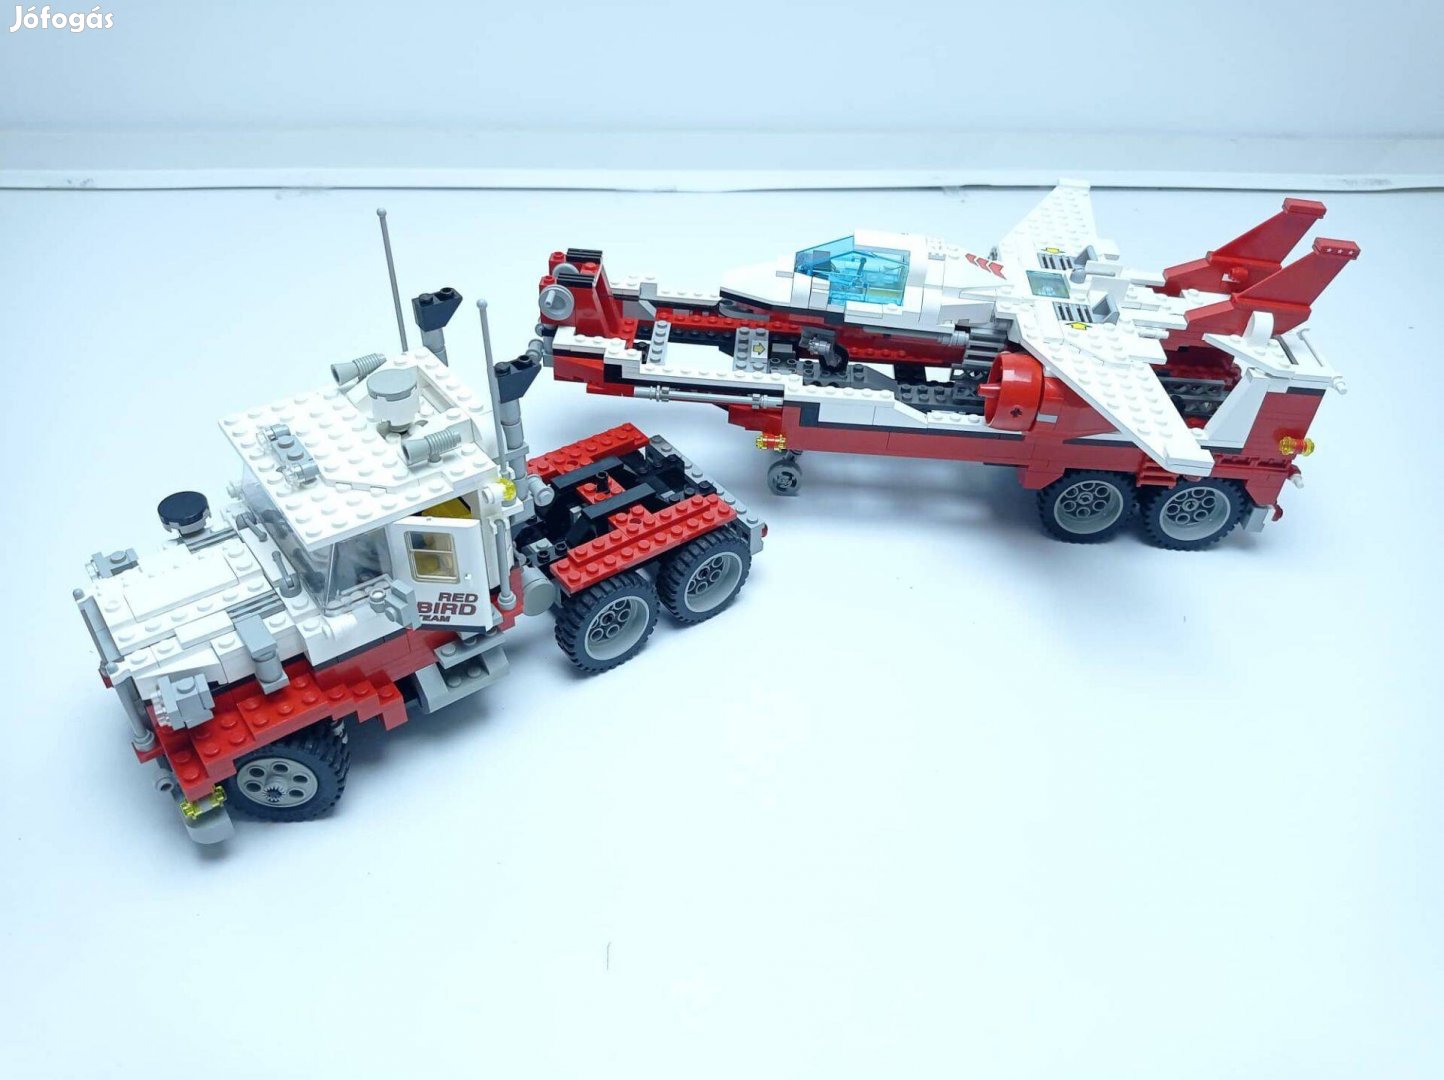 Lego 5591 Model Team Mach II Red Bird Rig (Használt készlet)